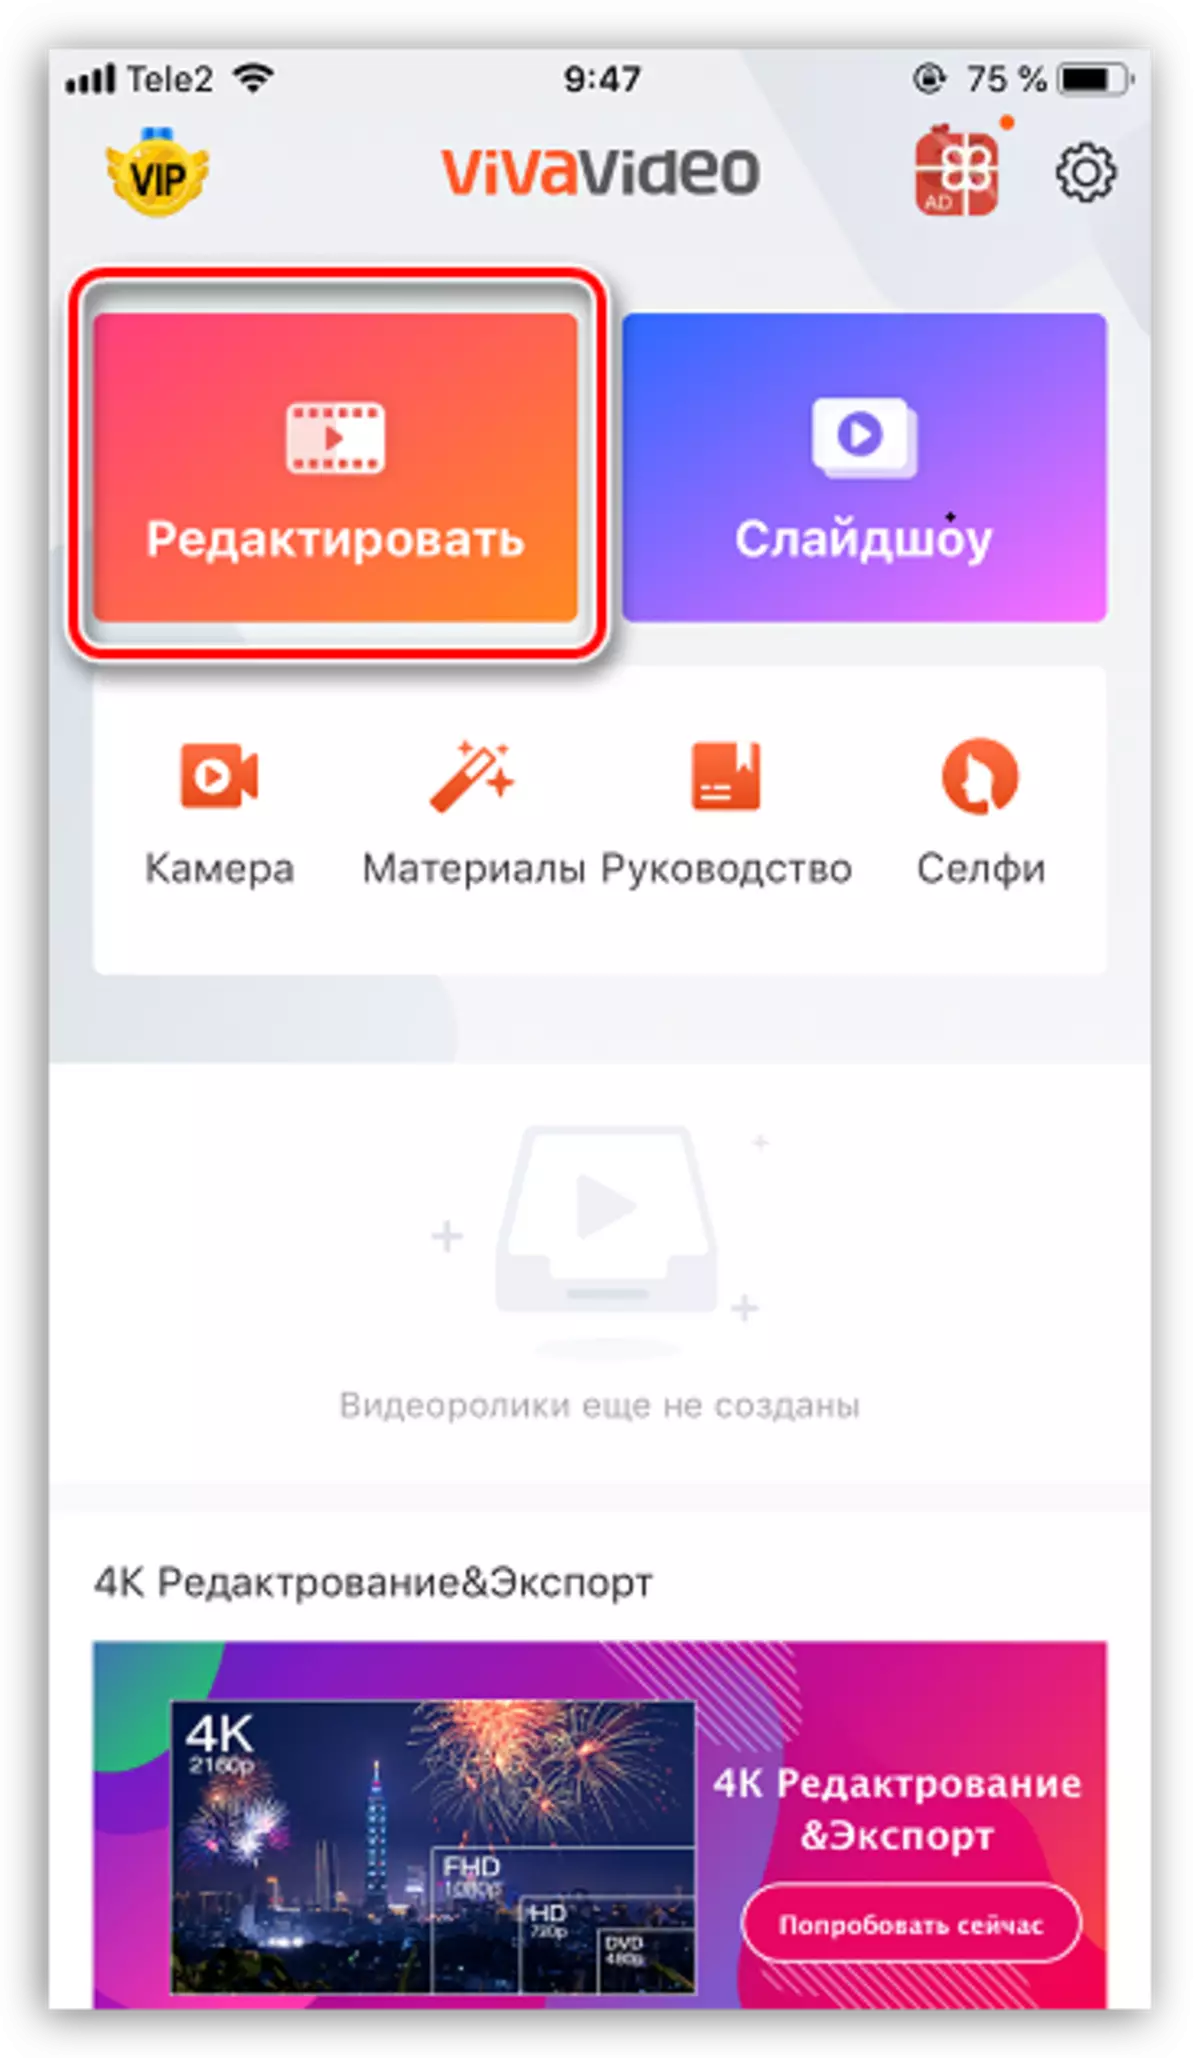 vivavideo ဖြင့်ဗွီဒီယိုတည်းဖြတ်ခြင်း iPhone တွင် application application